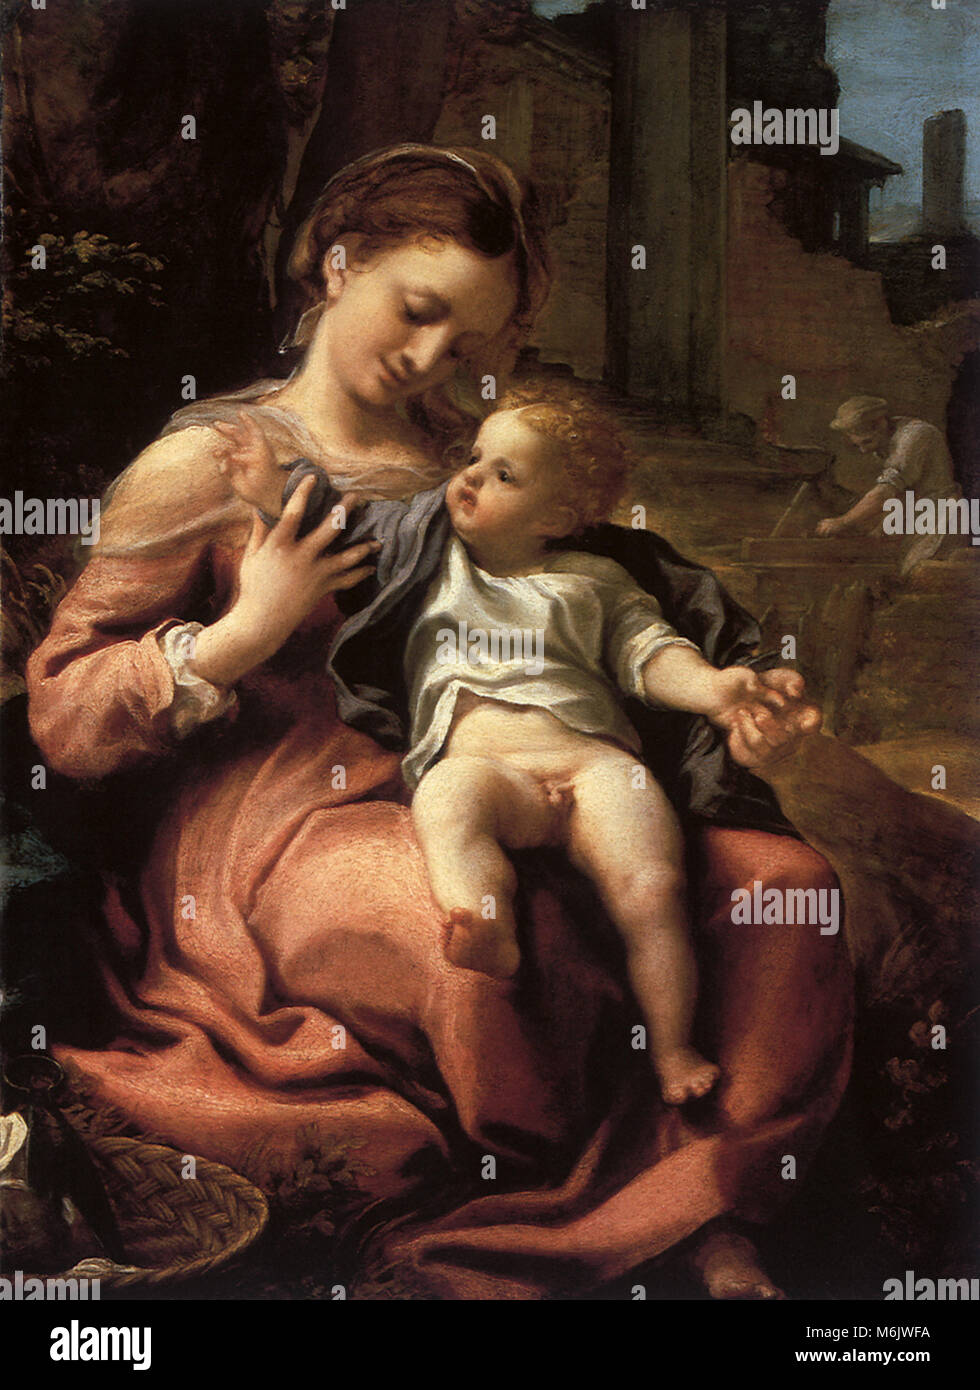 La Madonna del cestello, Correggio, Antonio Allegri da, 1520. Foto Stock